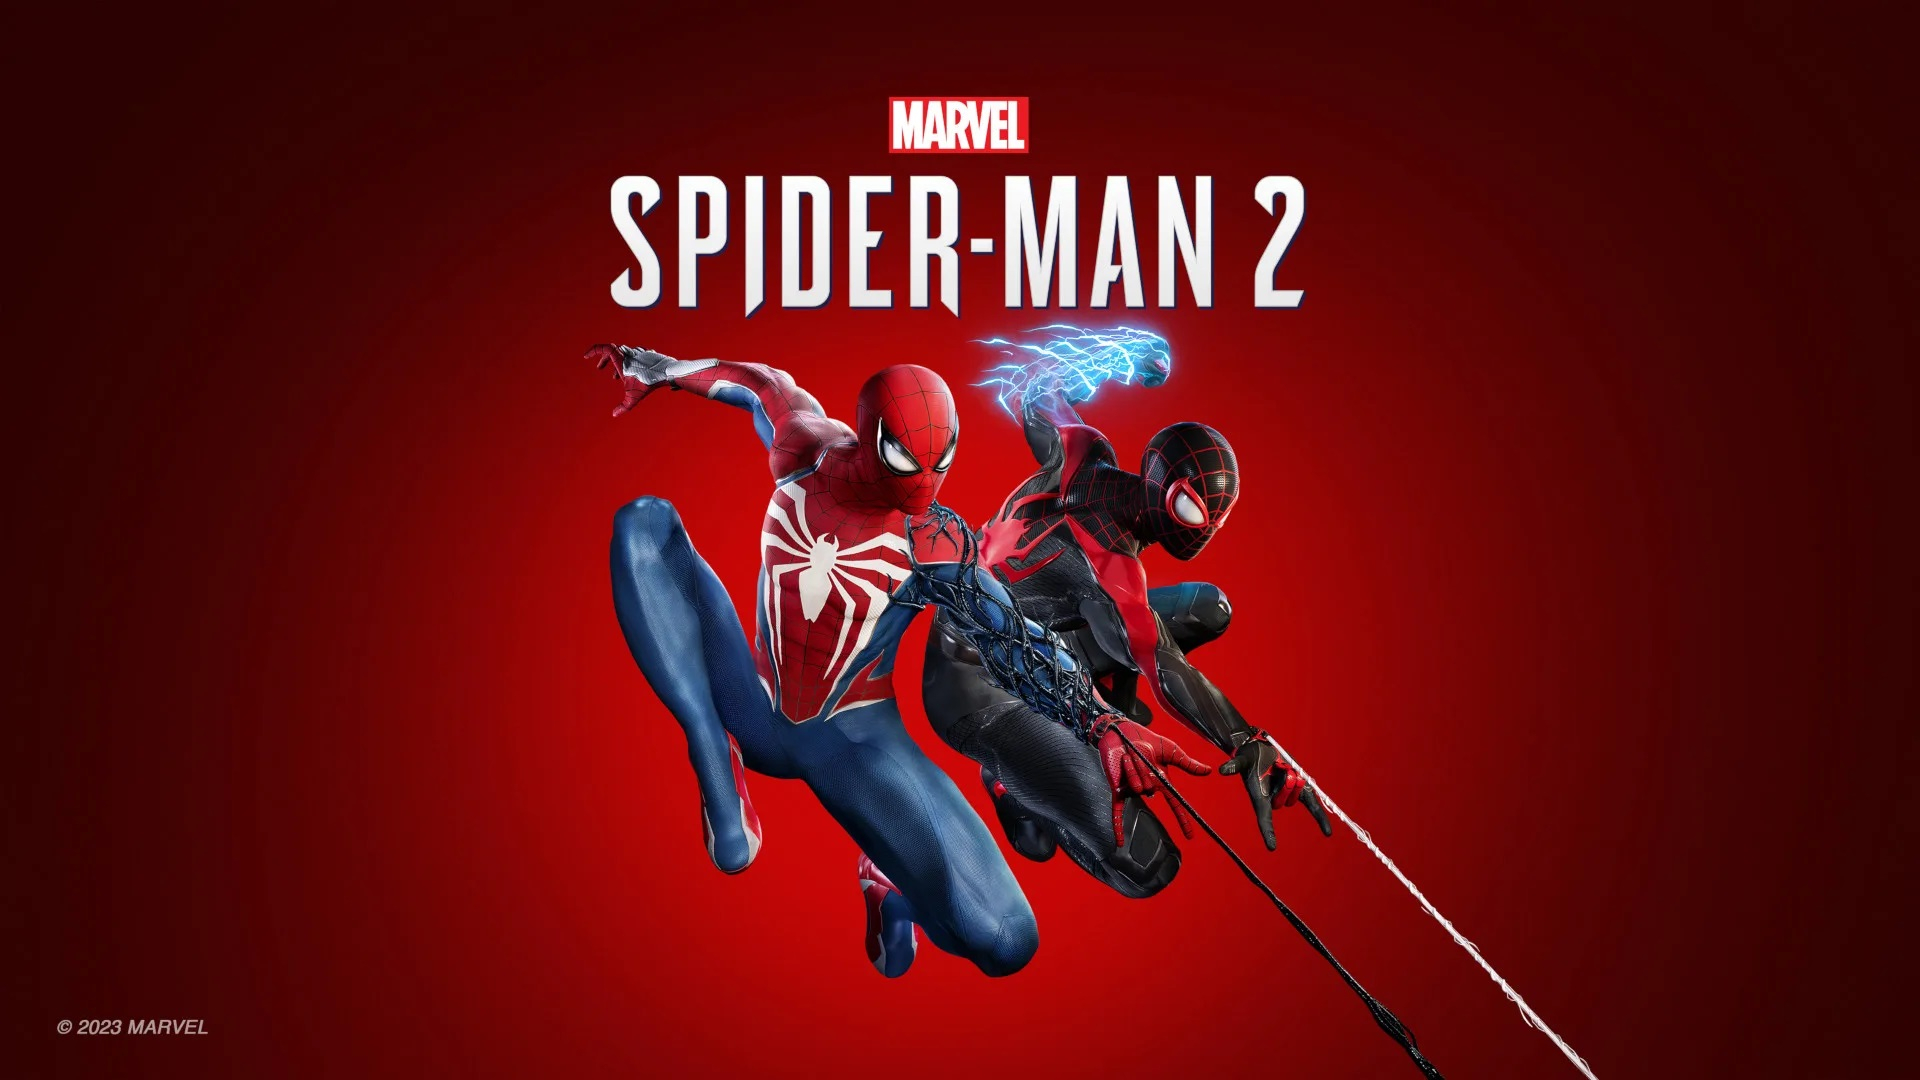 ПК-версия Marvel's Spider-Man 2 получила патч 1.4.7